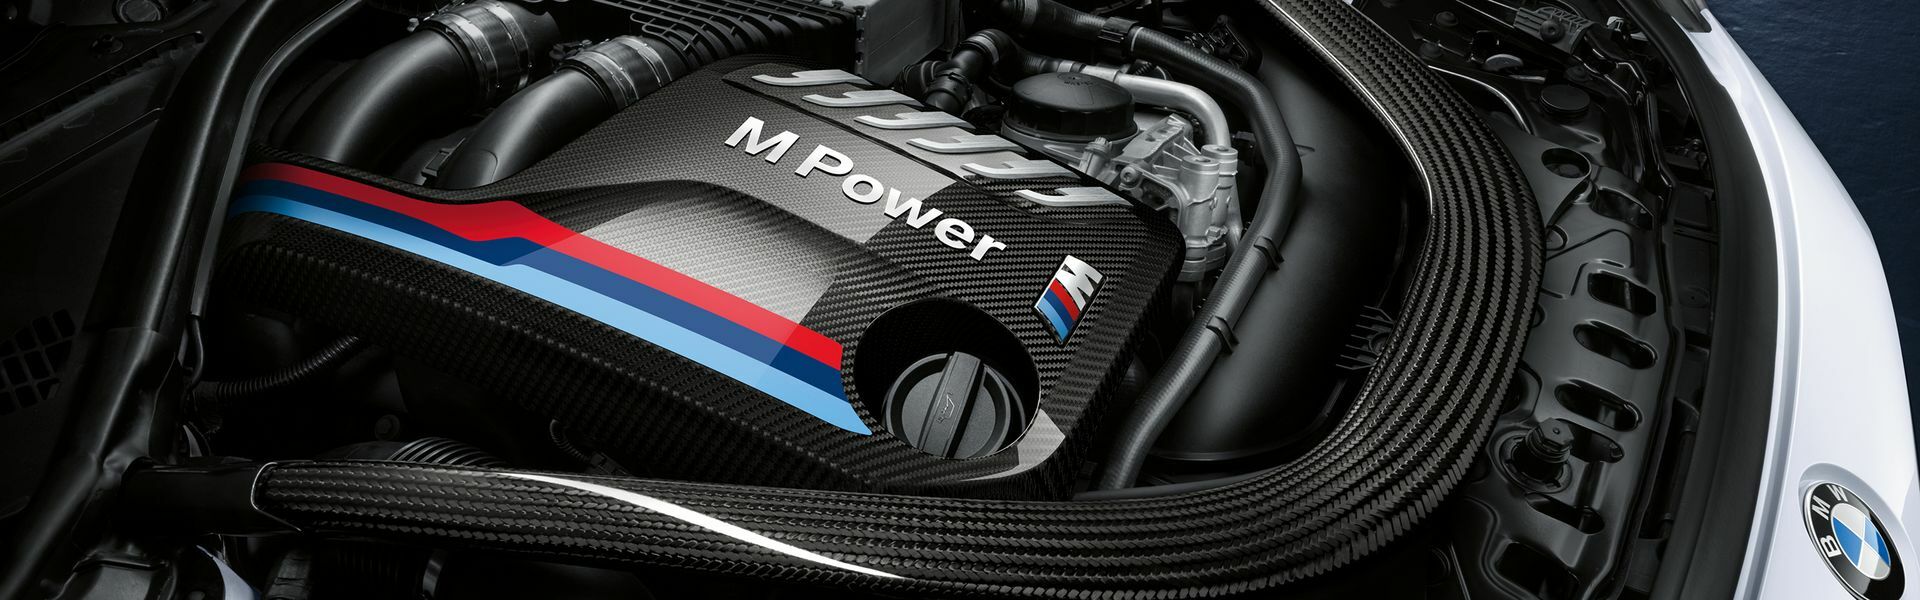 Zvýšení výkonu/ Softwarové úpravy/ Drobné performance díly pro automobil BMW M240i F22 F23